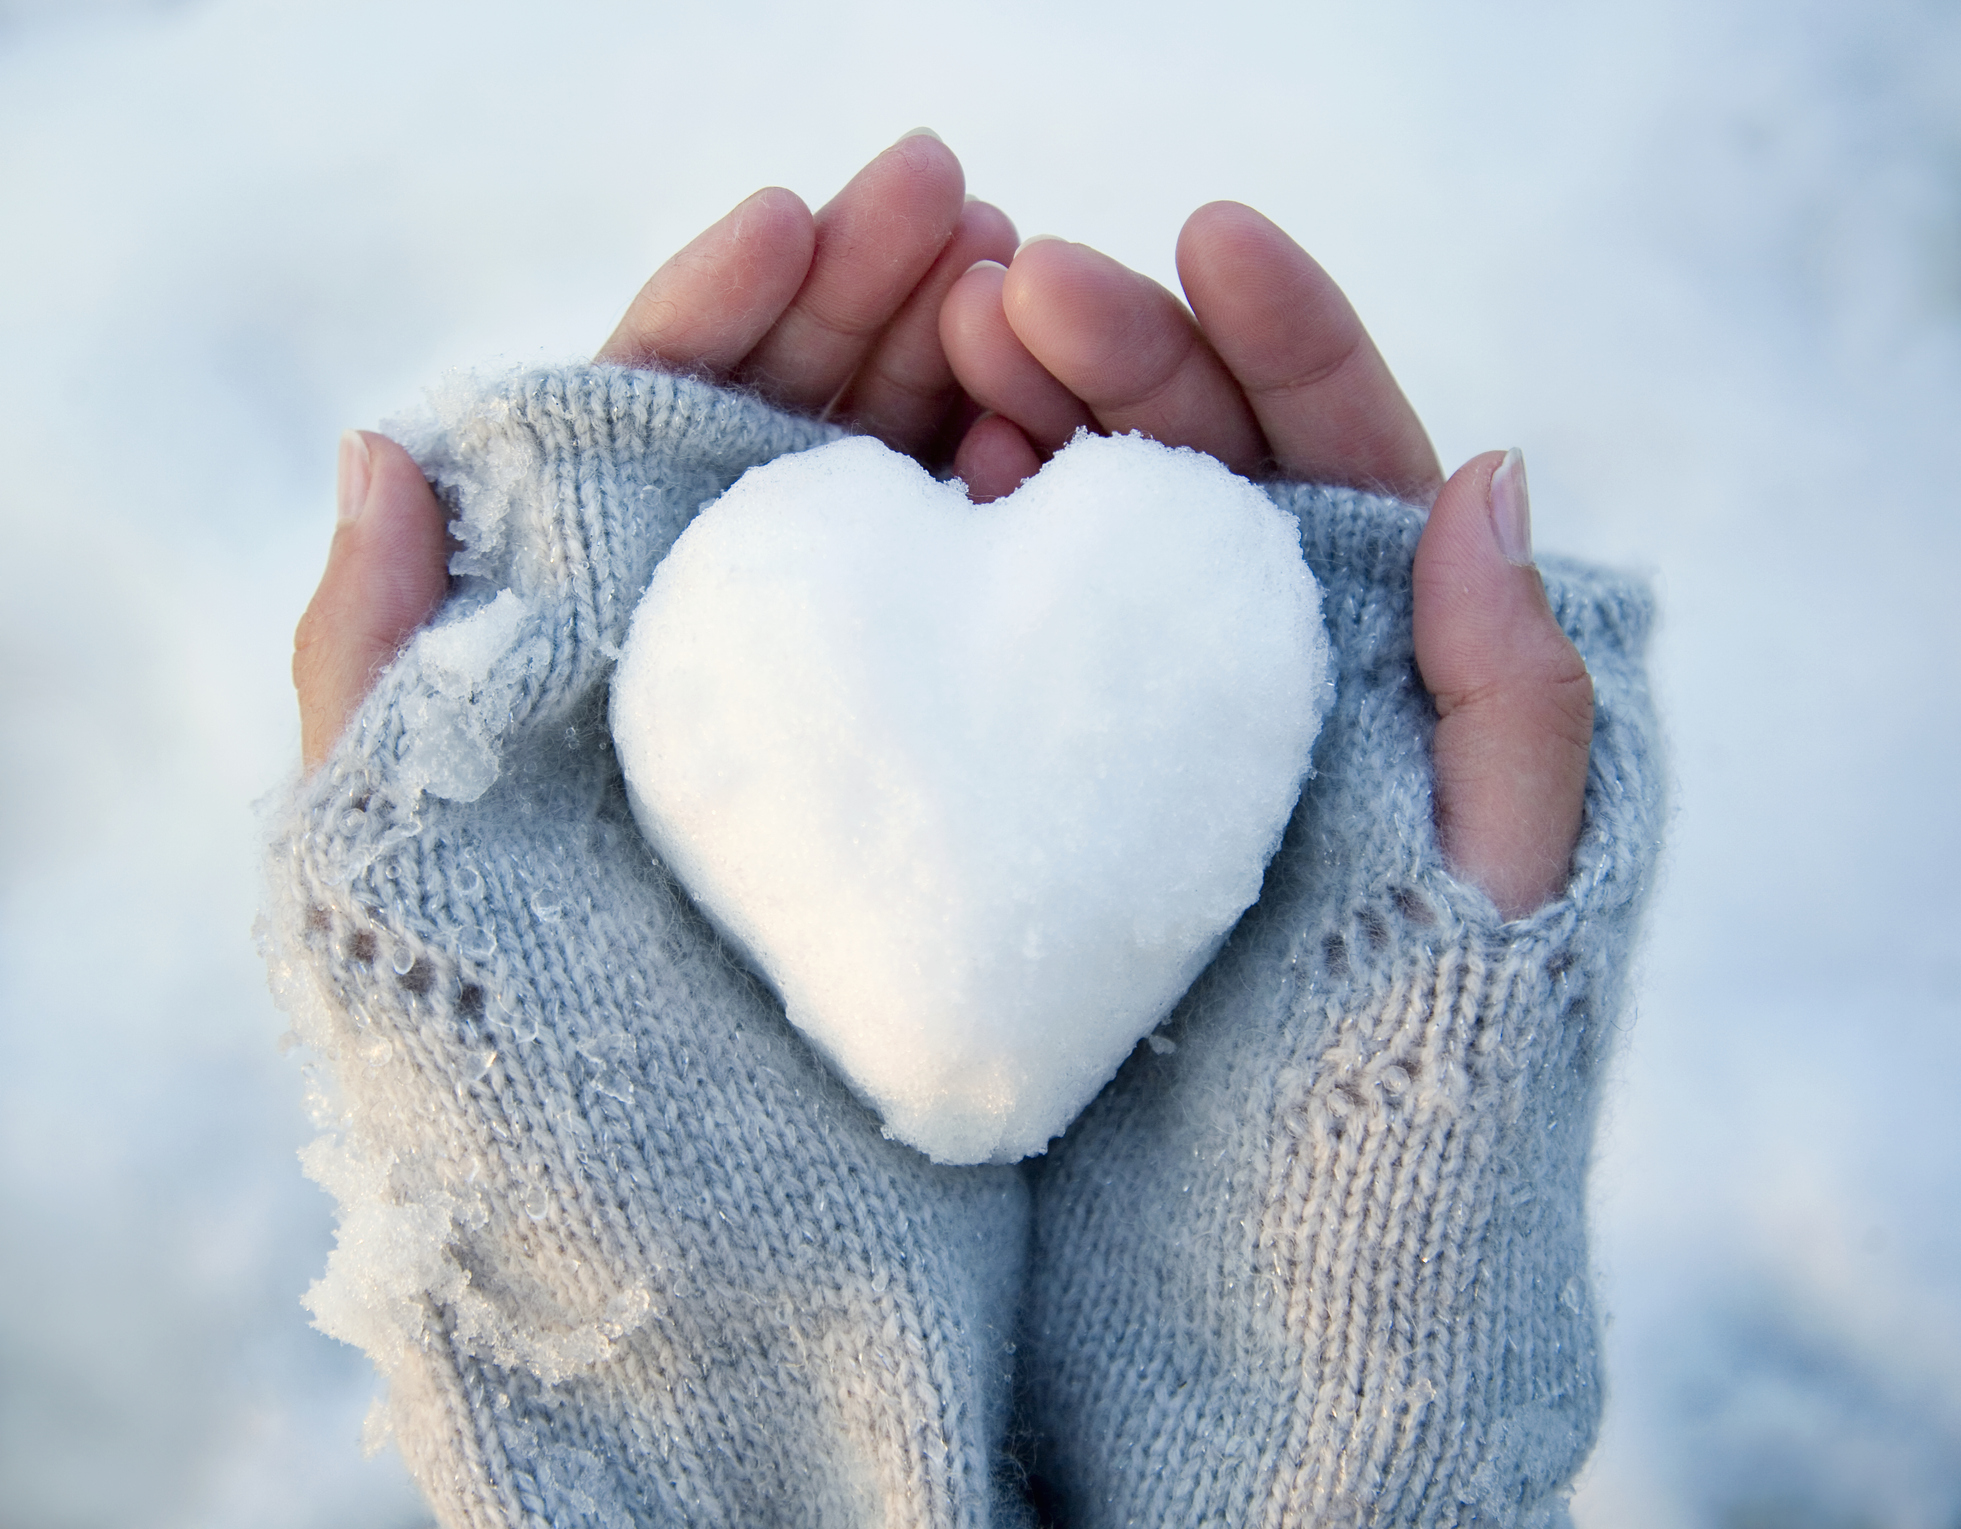 Тепло в полном счастье. Сердечко из снега. Сердце из снега в руках. Зимнее счастье. Сердце на снегу.